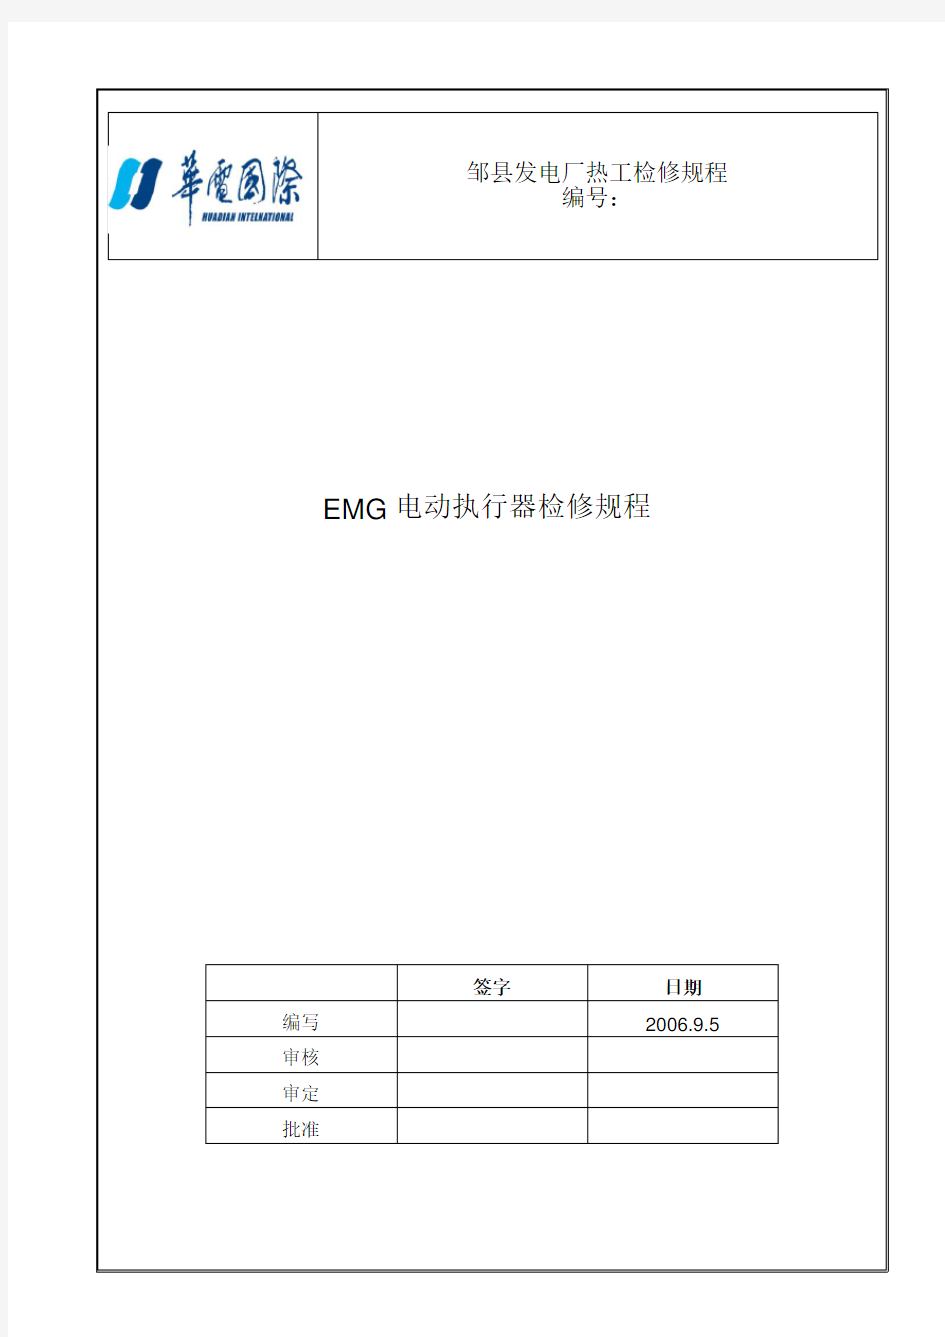 发电厂热工检修规程-电动执行器EMG检修规程